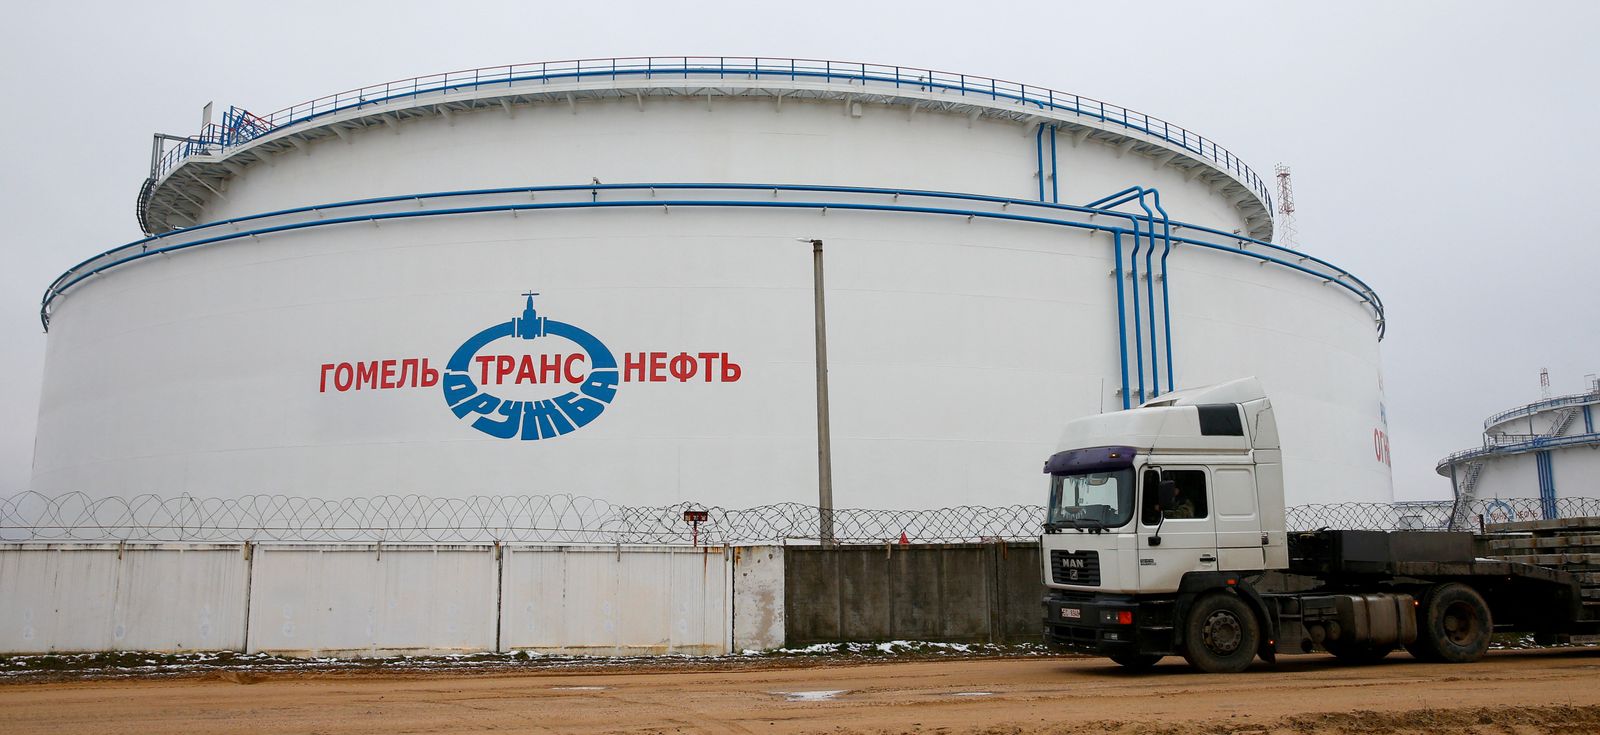 منشأة لتخزين النفط الروسي في محطة جوميل التابعة لشركة 